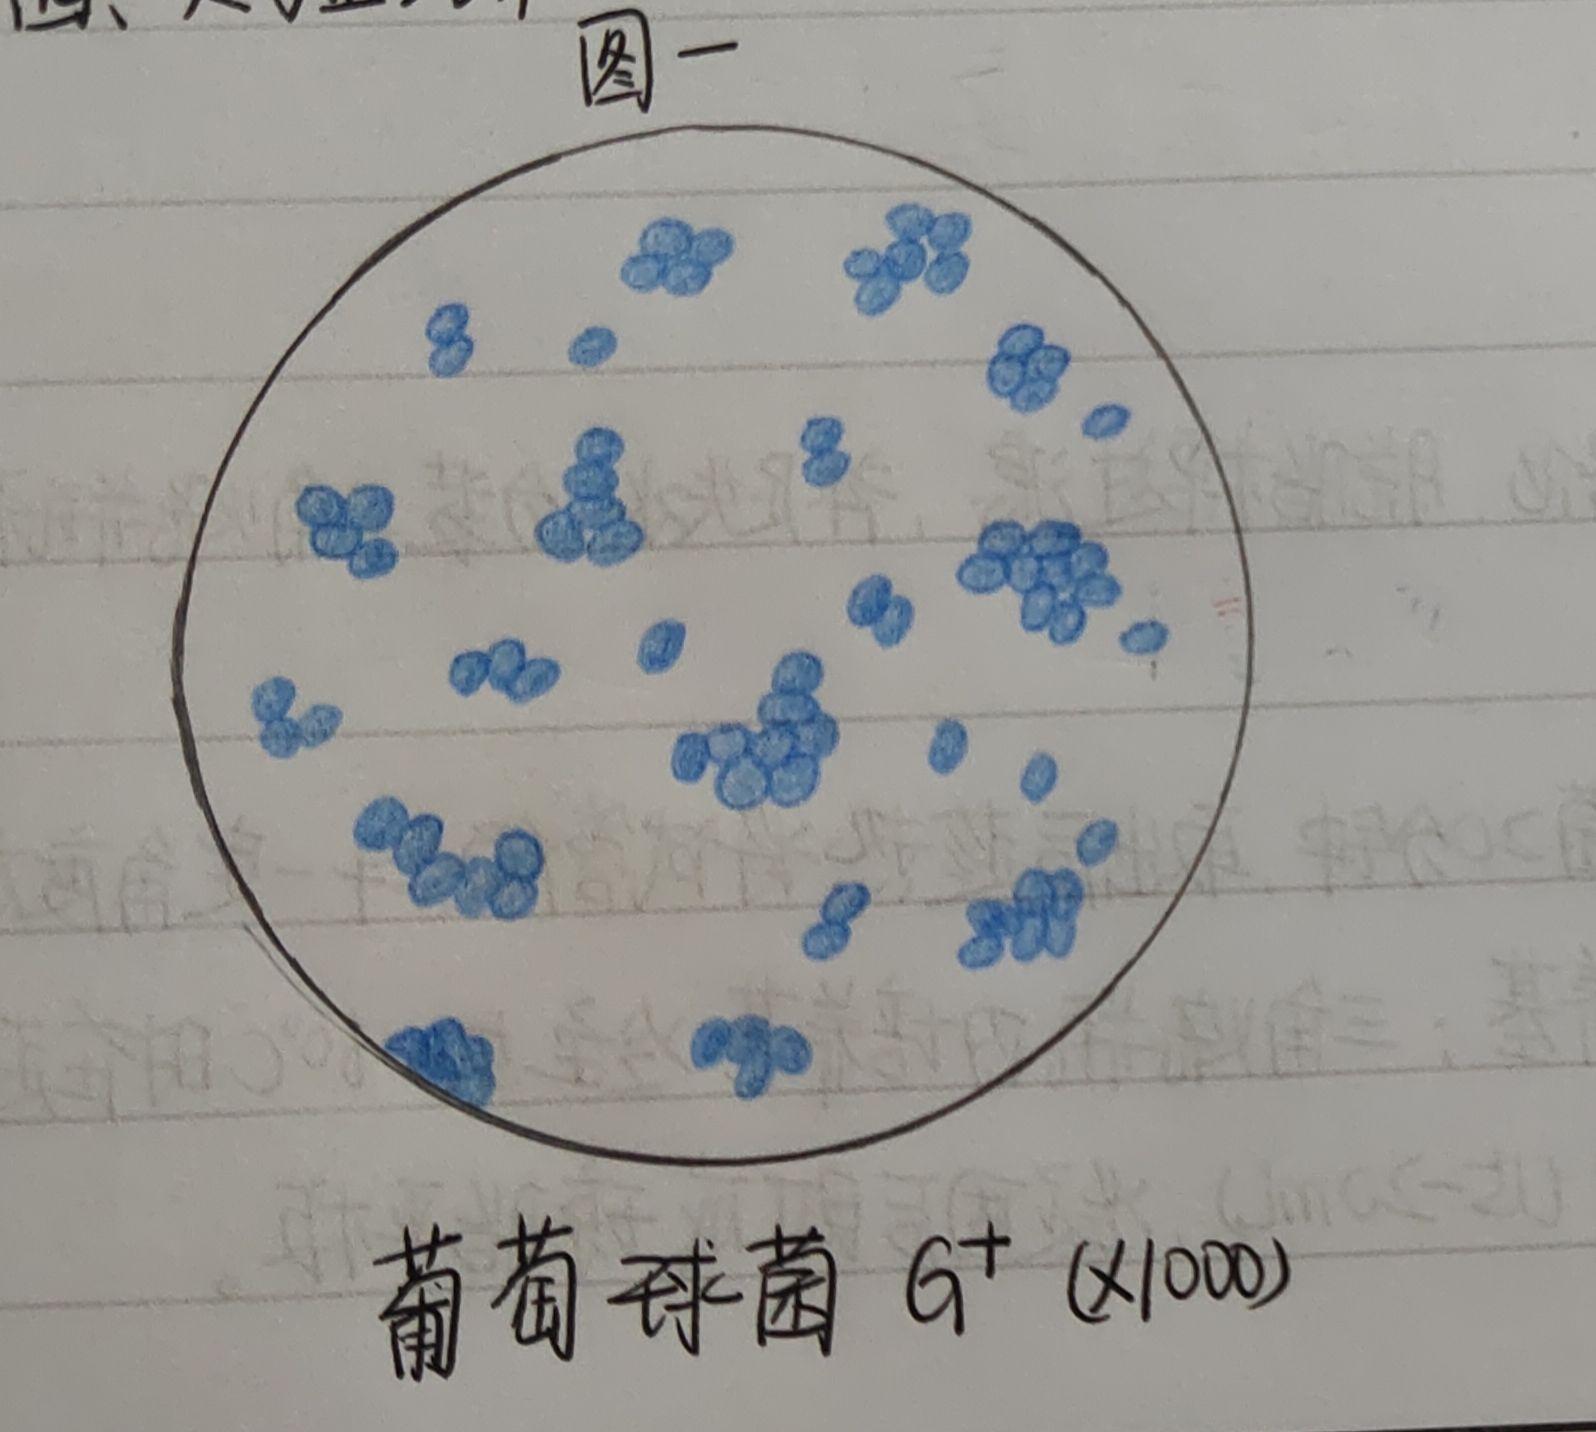 结核杆菌,大肠杆菌,蜡样芽孢杆菌,炭疽杆菌的红蓝铅笔手绘图吗?